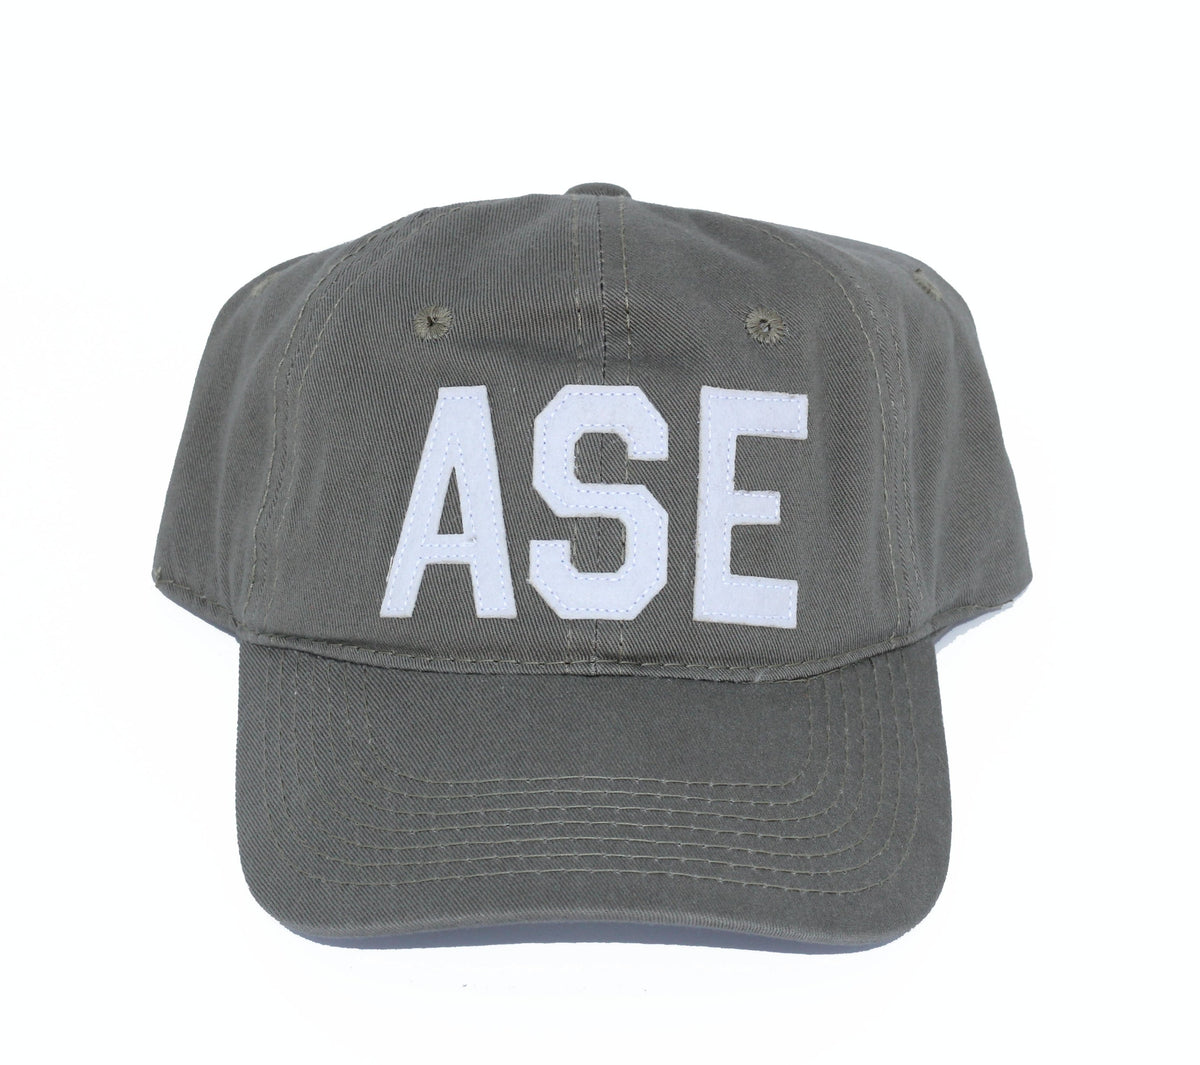 ASE-Aspen, CO Hat